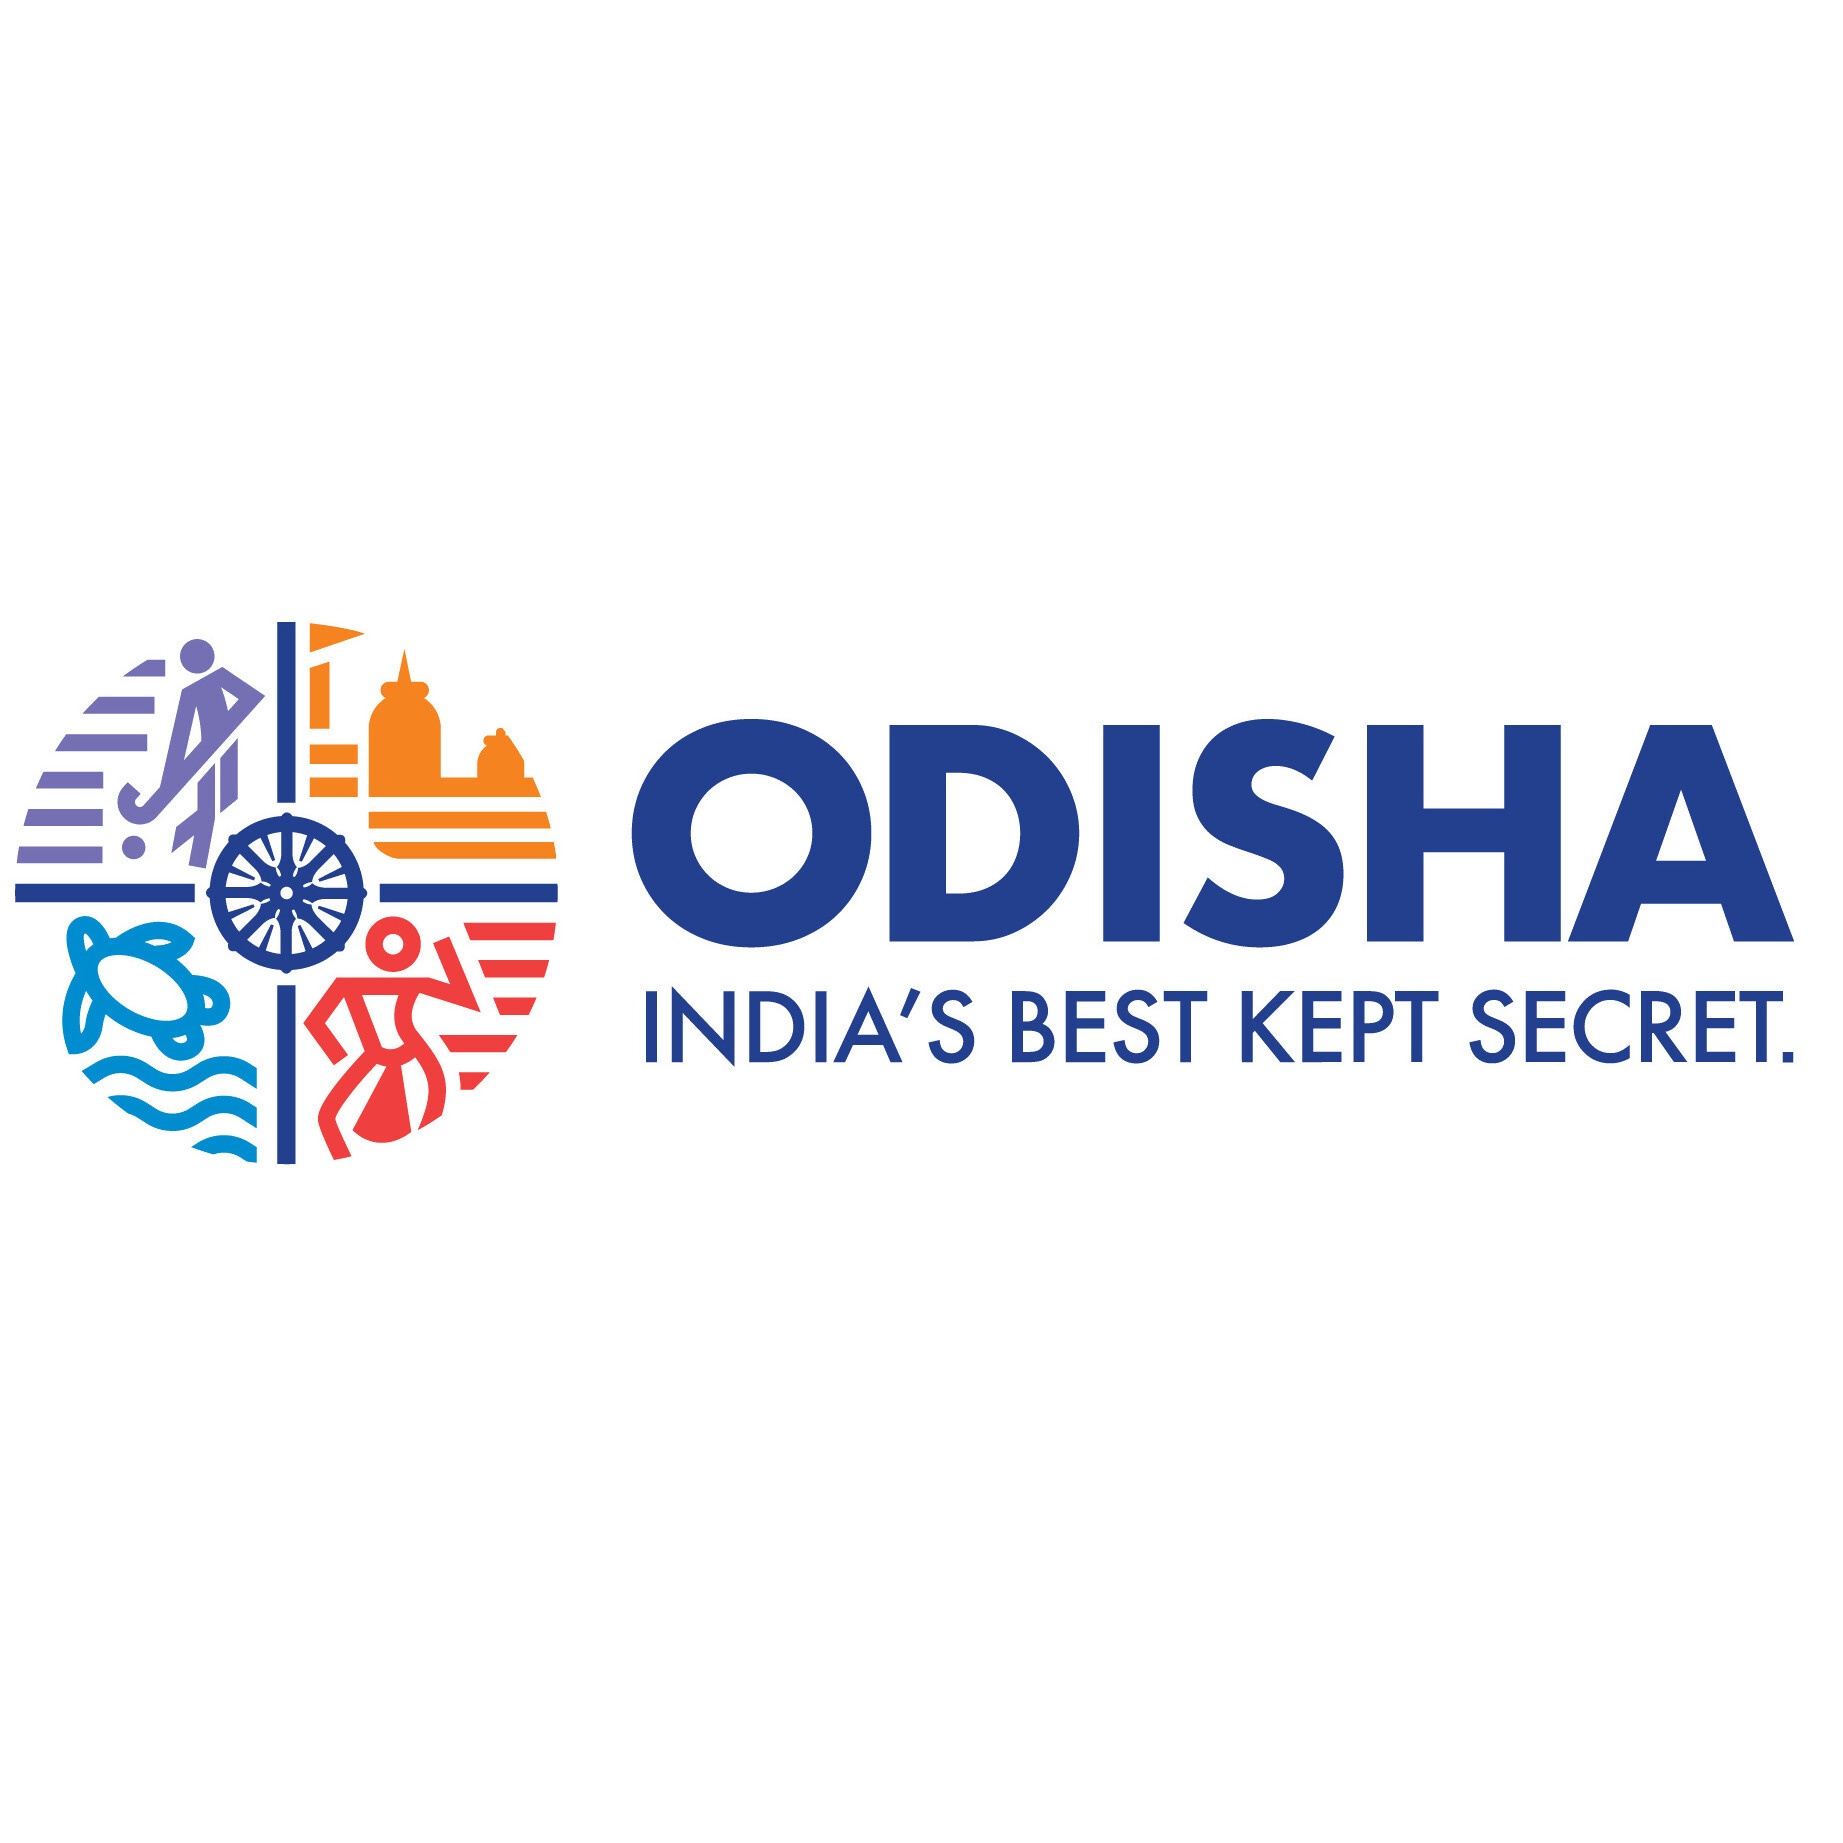 odisha tourism development corporation ltd bhubaneswar odisha